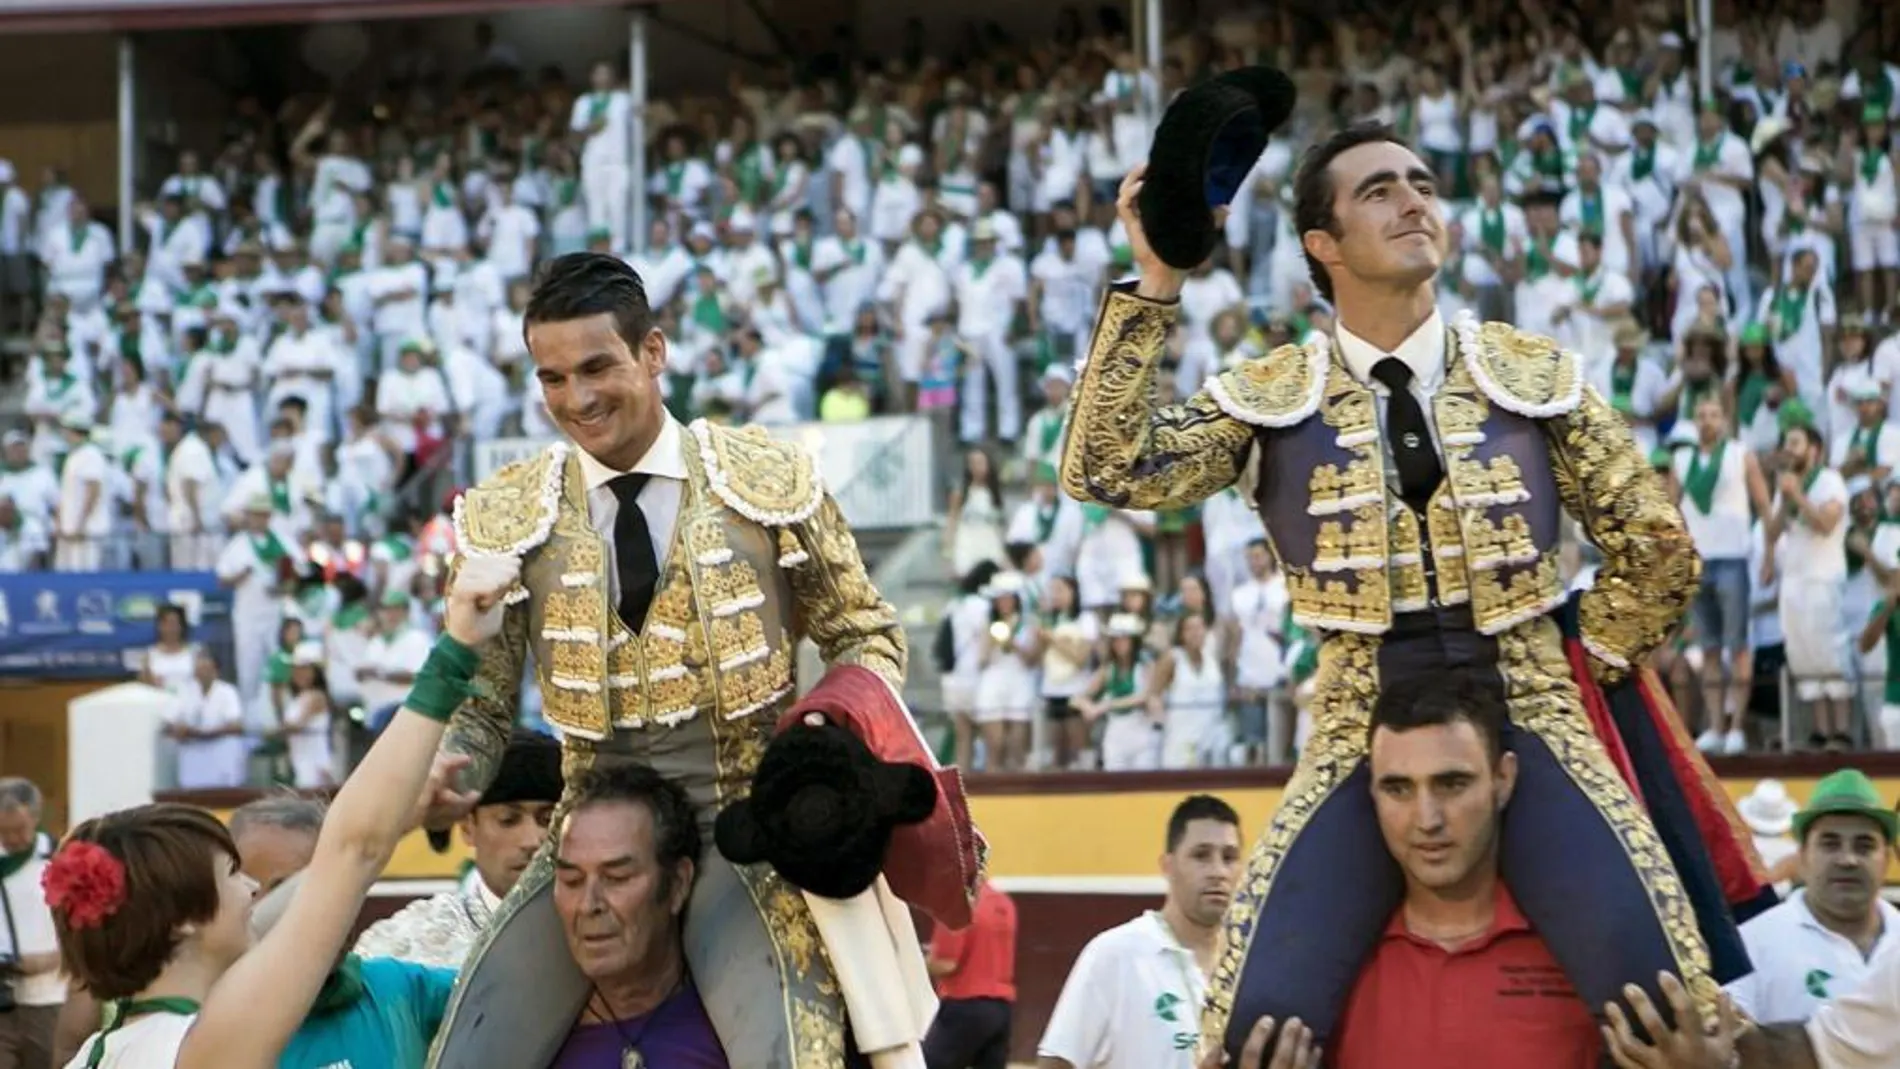 Los diestros José María Manzanares (i) y El Fandi salieron a hombros tras cortar dos orejas cada uno en el festejo taurino de las fiestas de San Lorenzo celebrado esta tarde en Huesca.